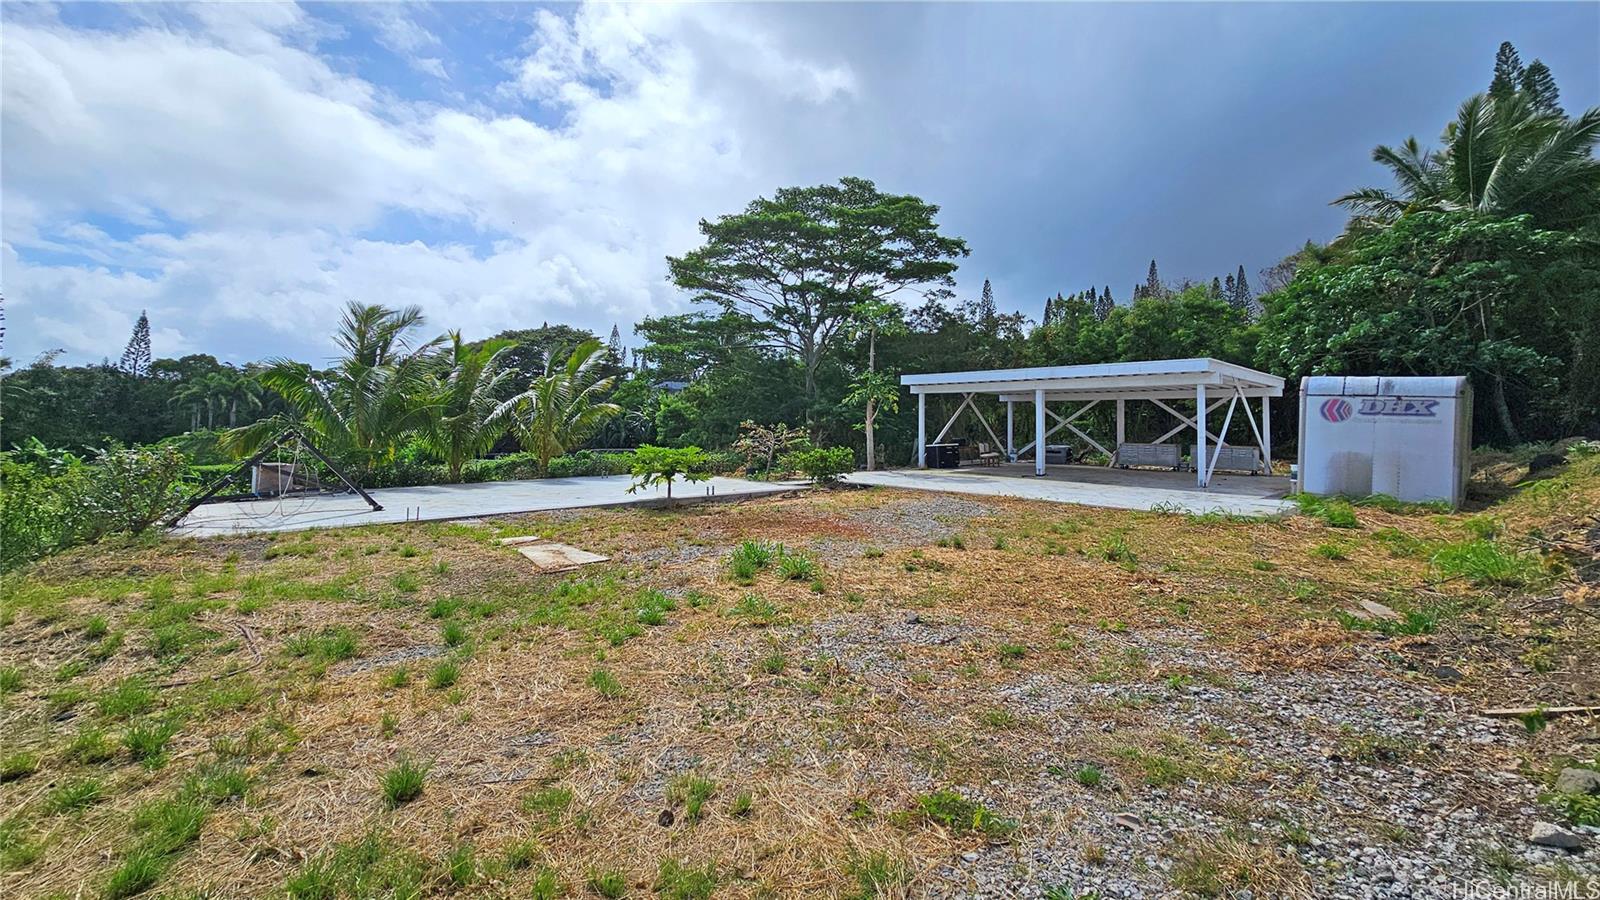 42-259 Old Kalanianaole Road  Kailua, Hi vacant land for sale - photo 12 of 14